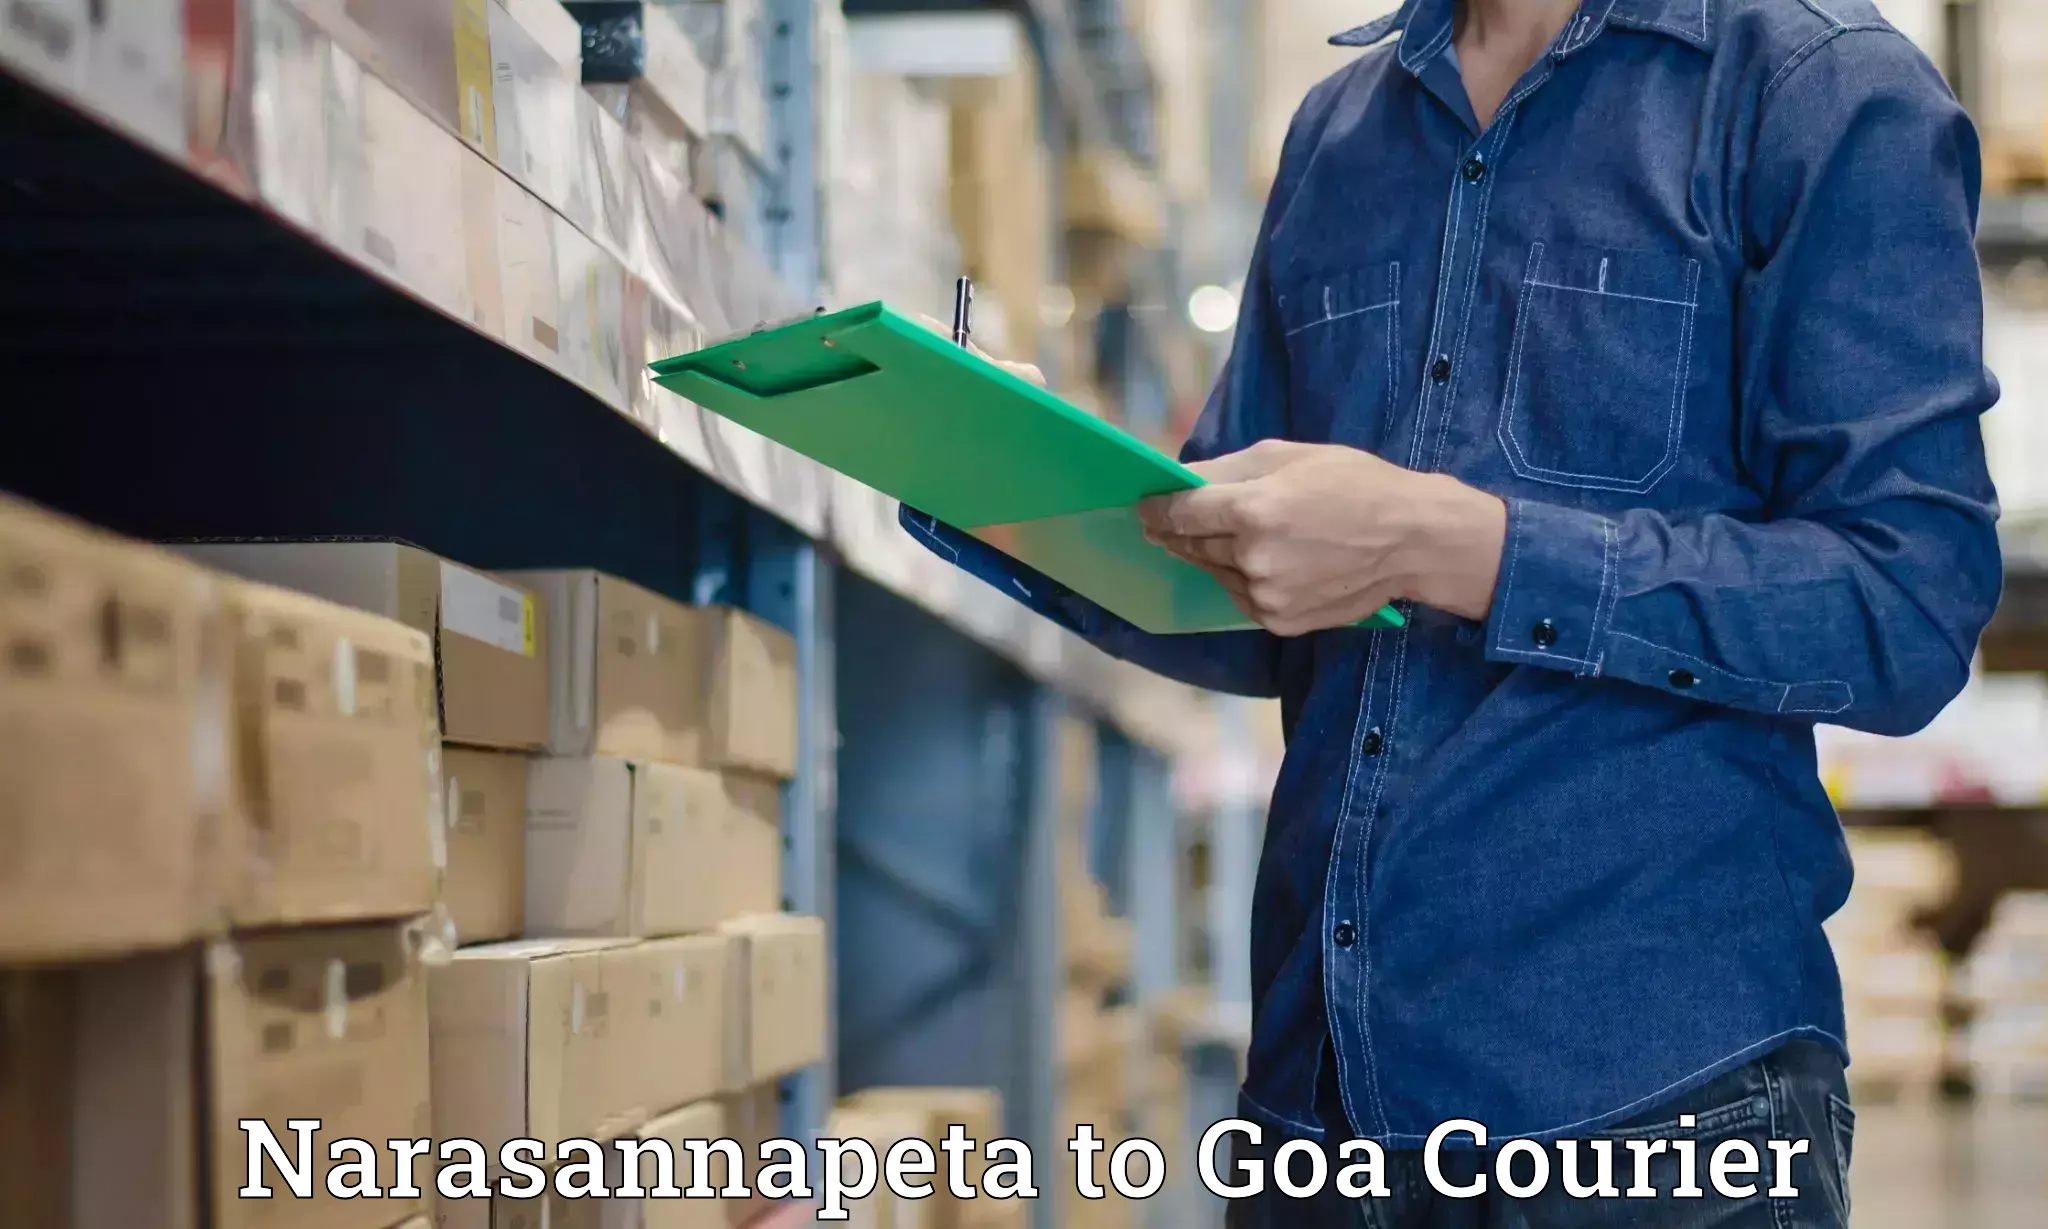 Premium courier services in Narasannapeta to NIT Goa